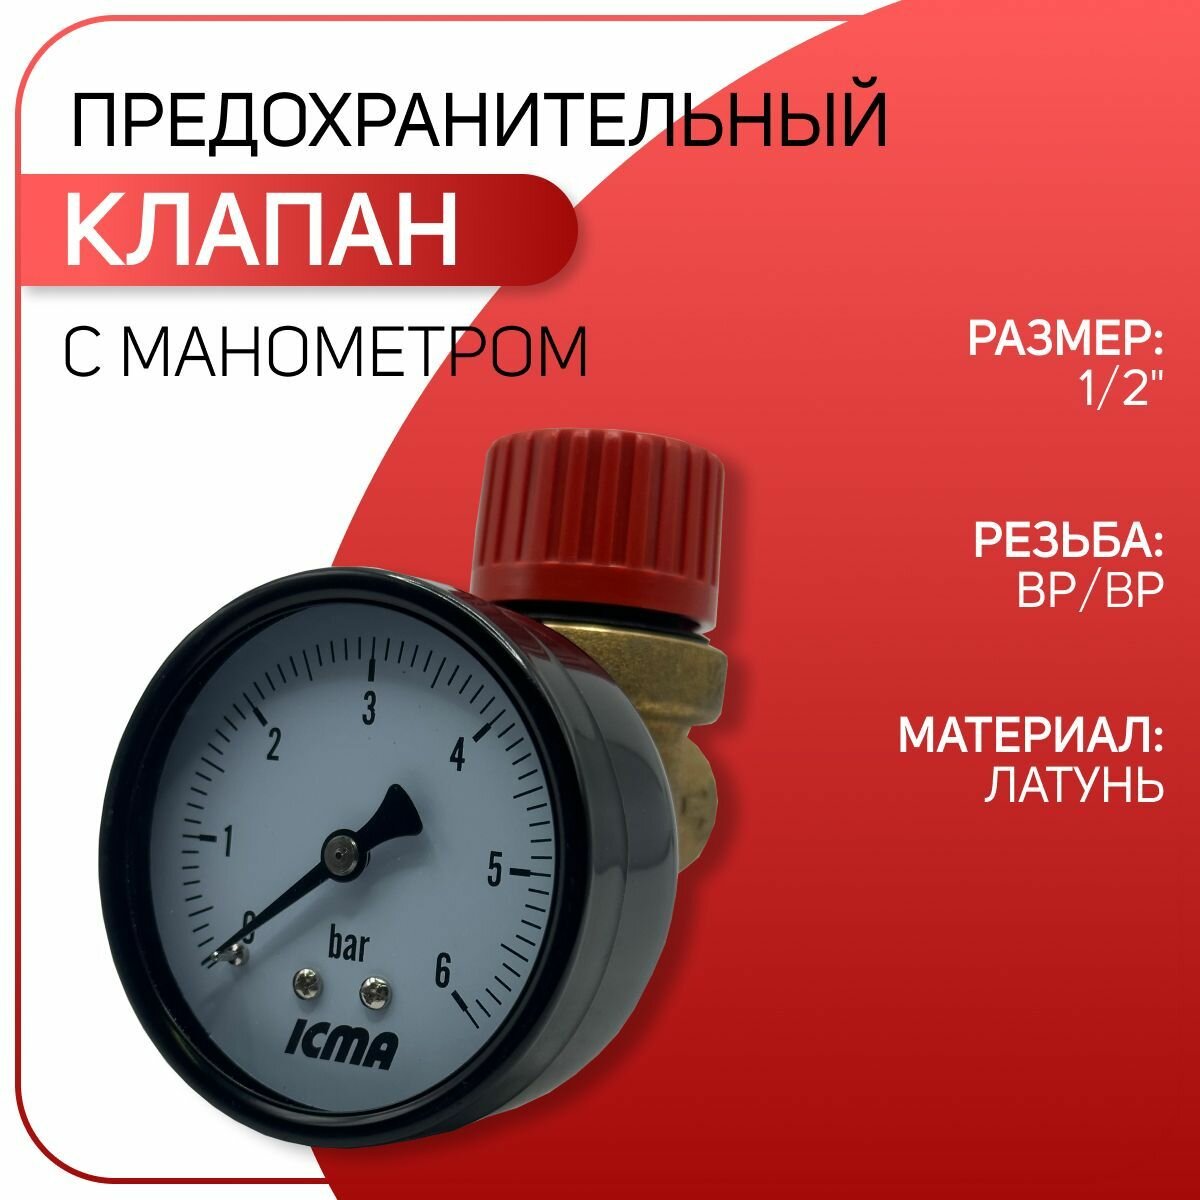 Клапан предохранительный с манометром, мембранный, латунный, ICMA арт. 253, ВР/ВР, 1/2" х 6 бар